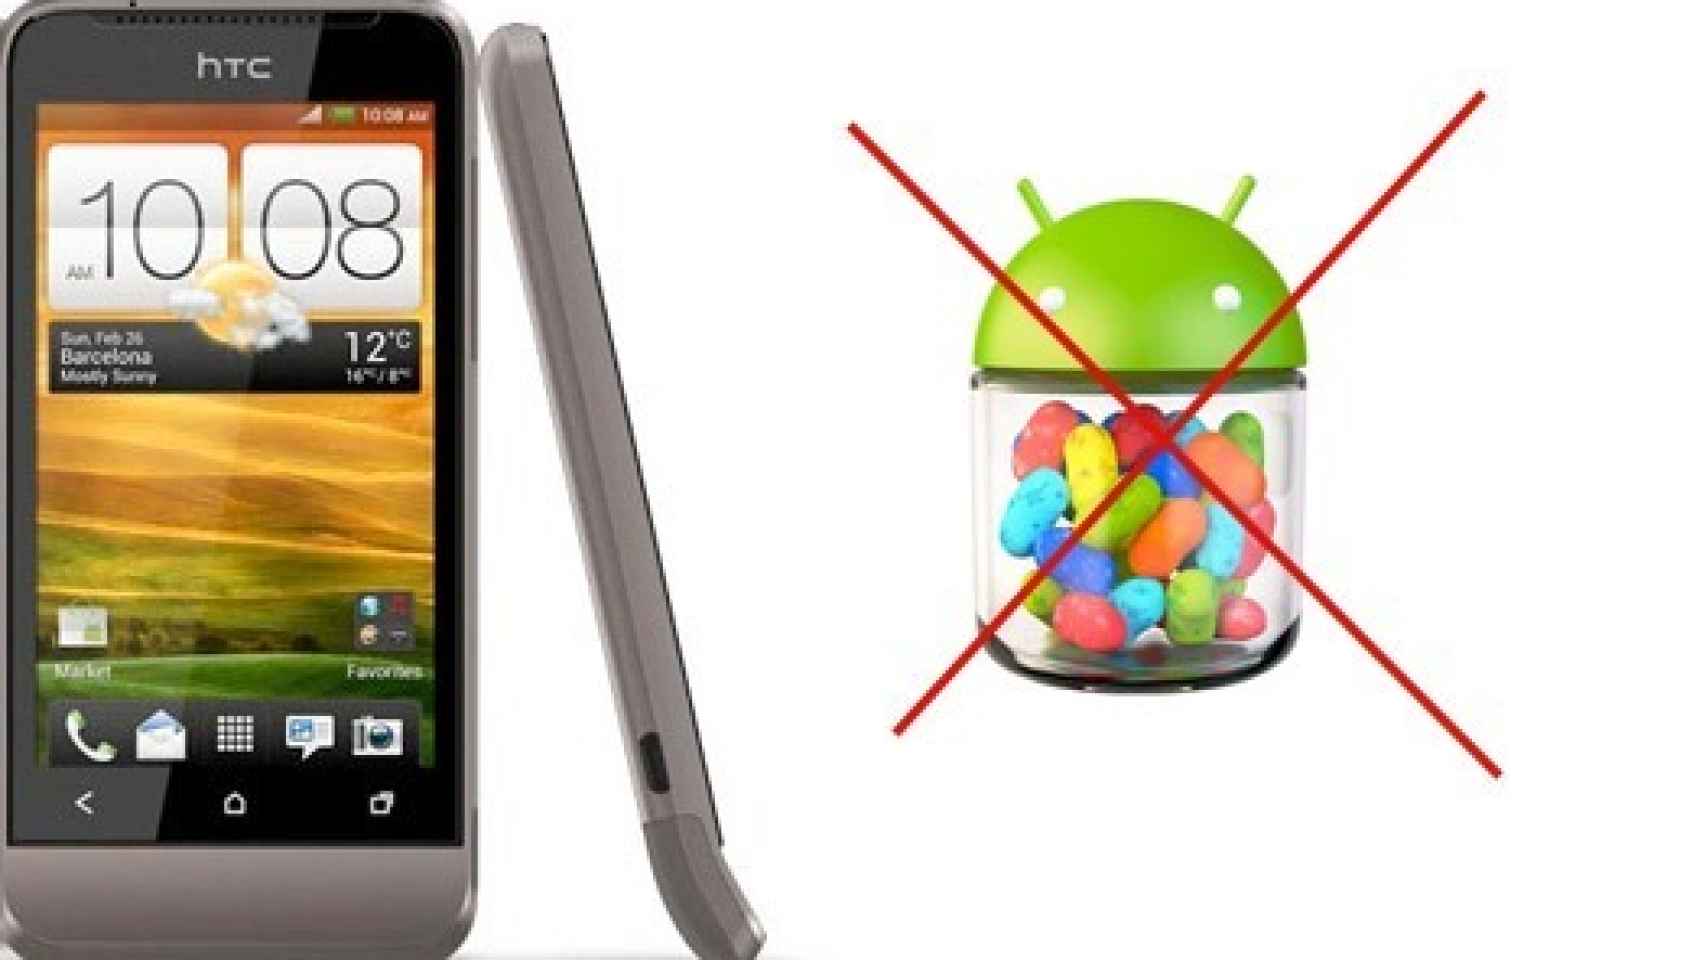 Los teléfonos HTC solo recibirán Android 4.1 Jelly Bean si tienen más de 512 Mb de RAM